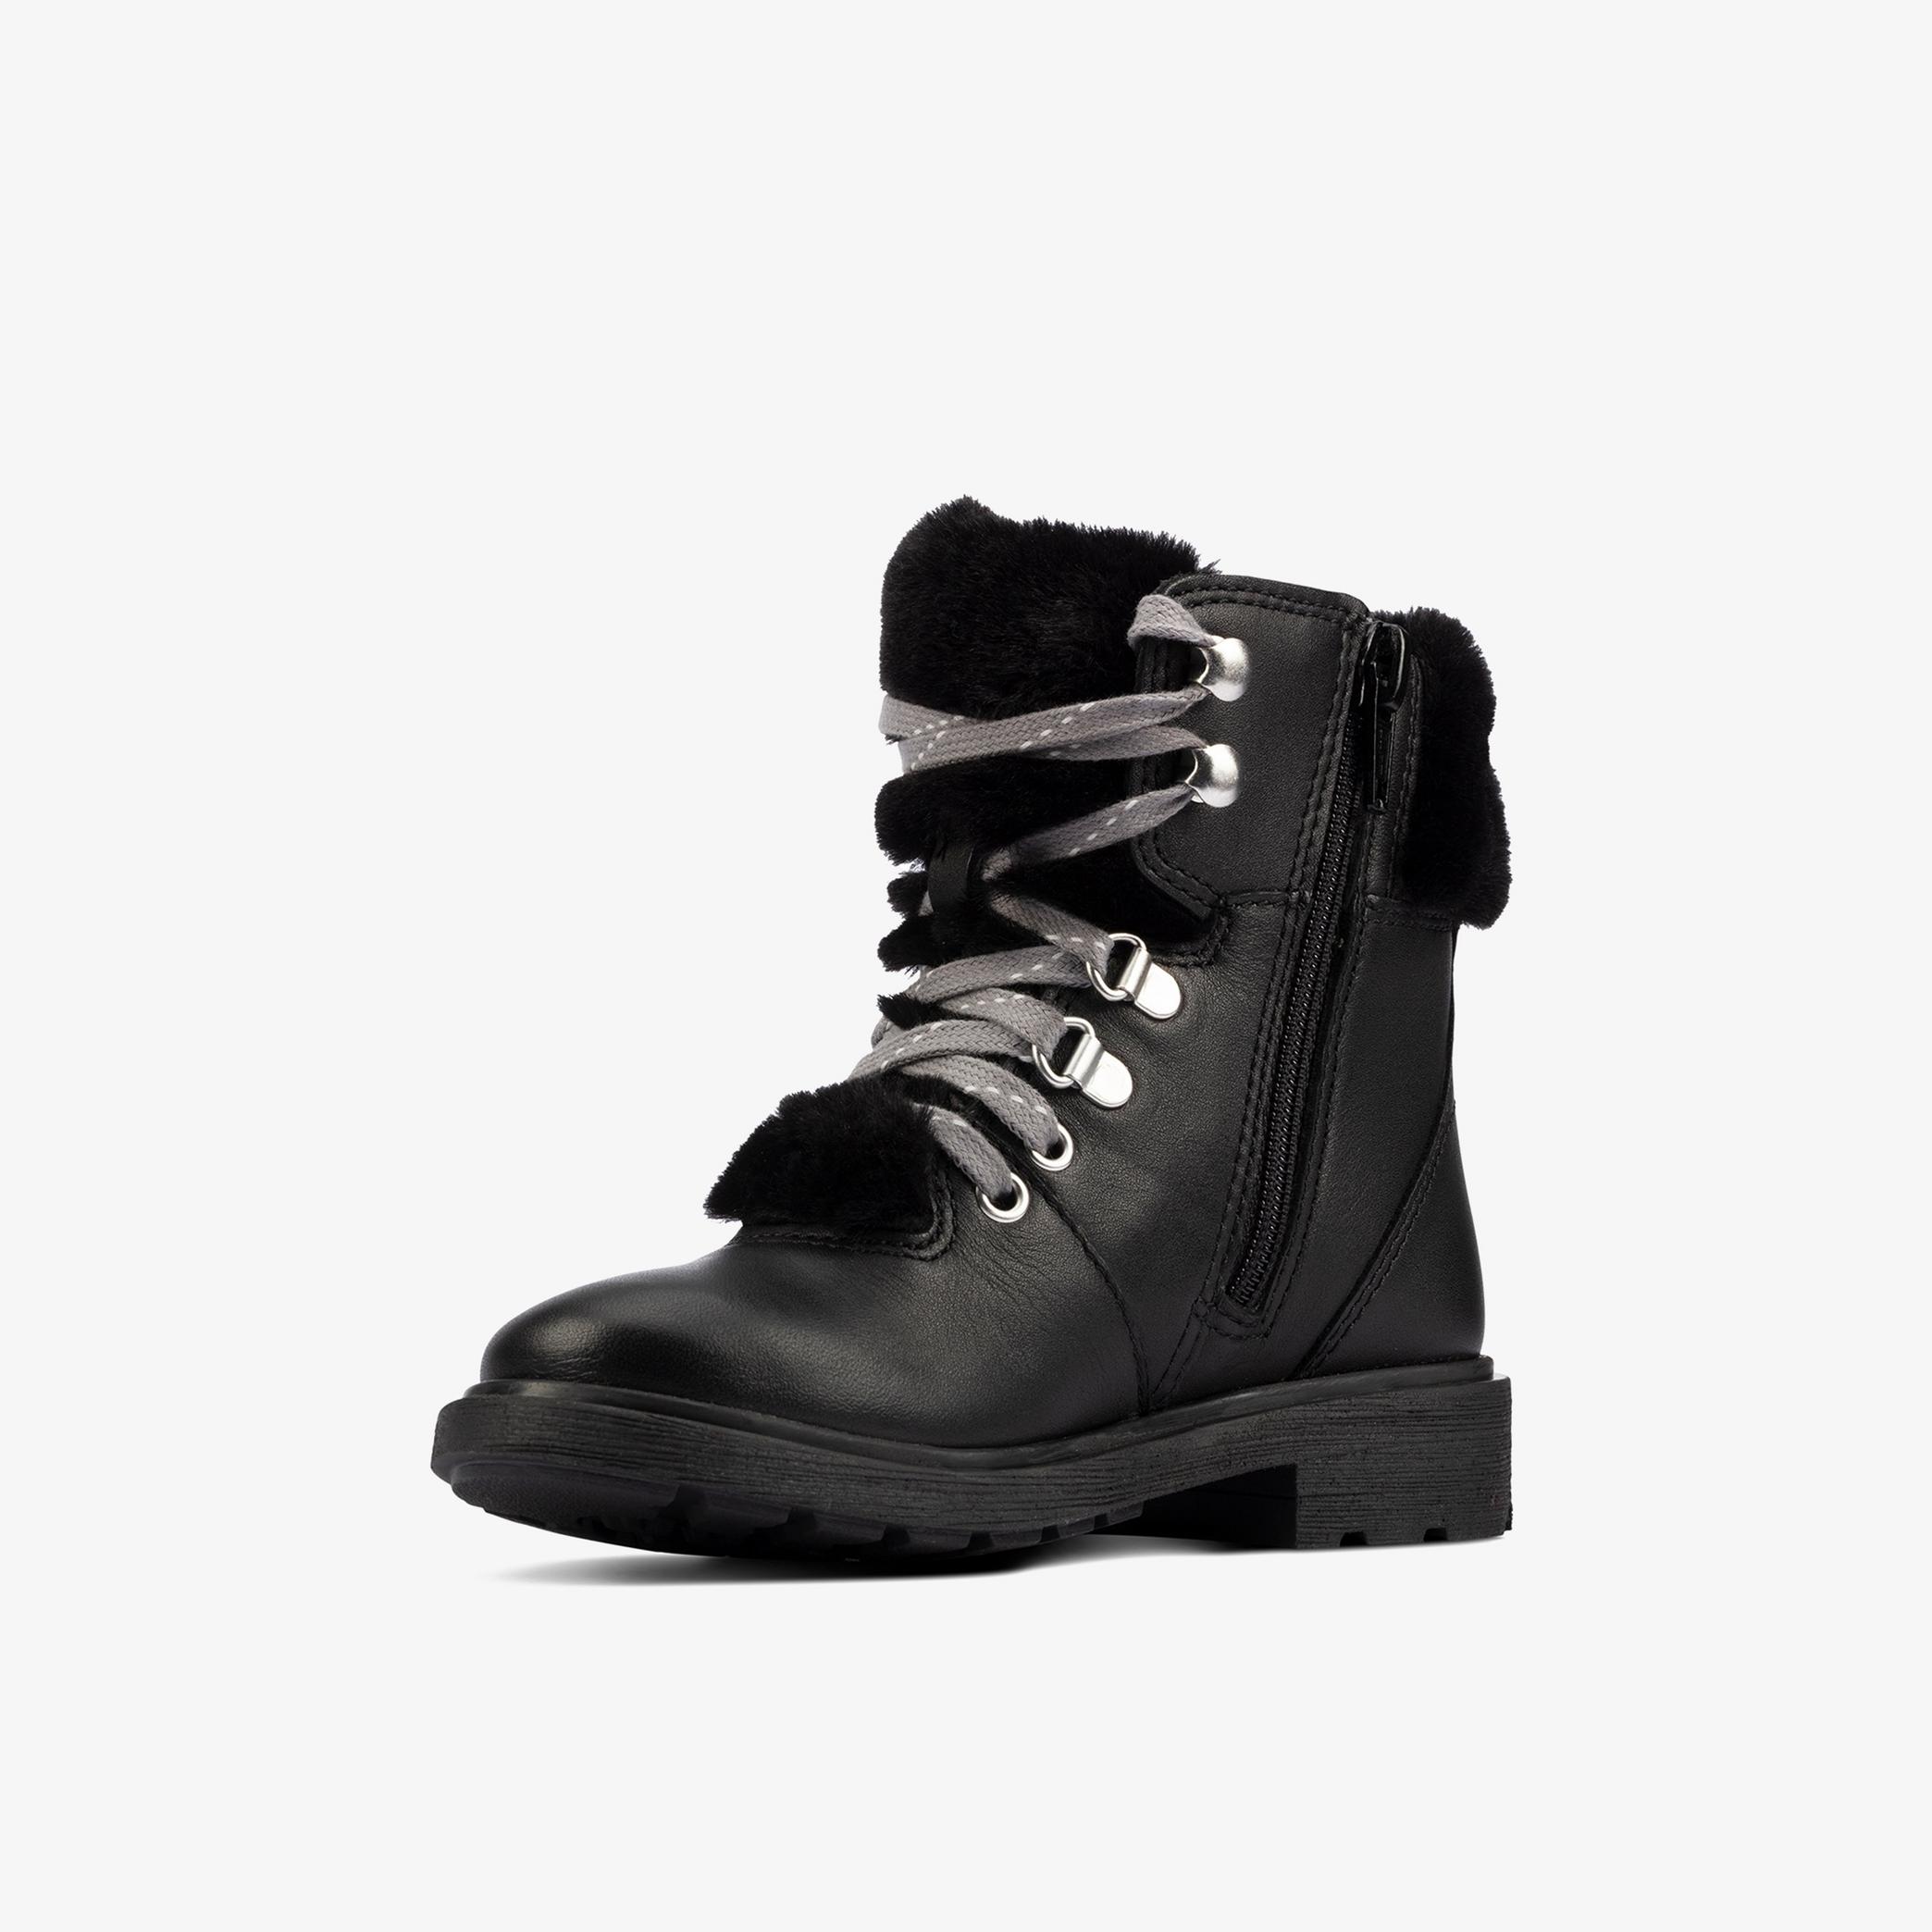 GIRLS Astrol Hiker Toddler Black Leather Boots | Clarks Outlet